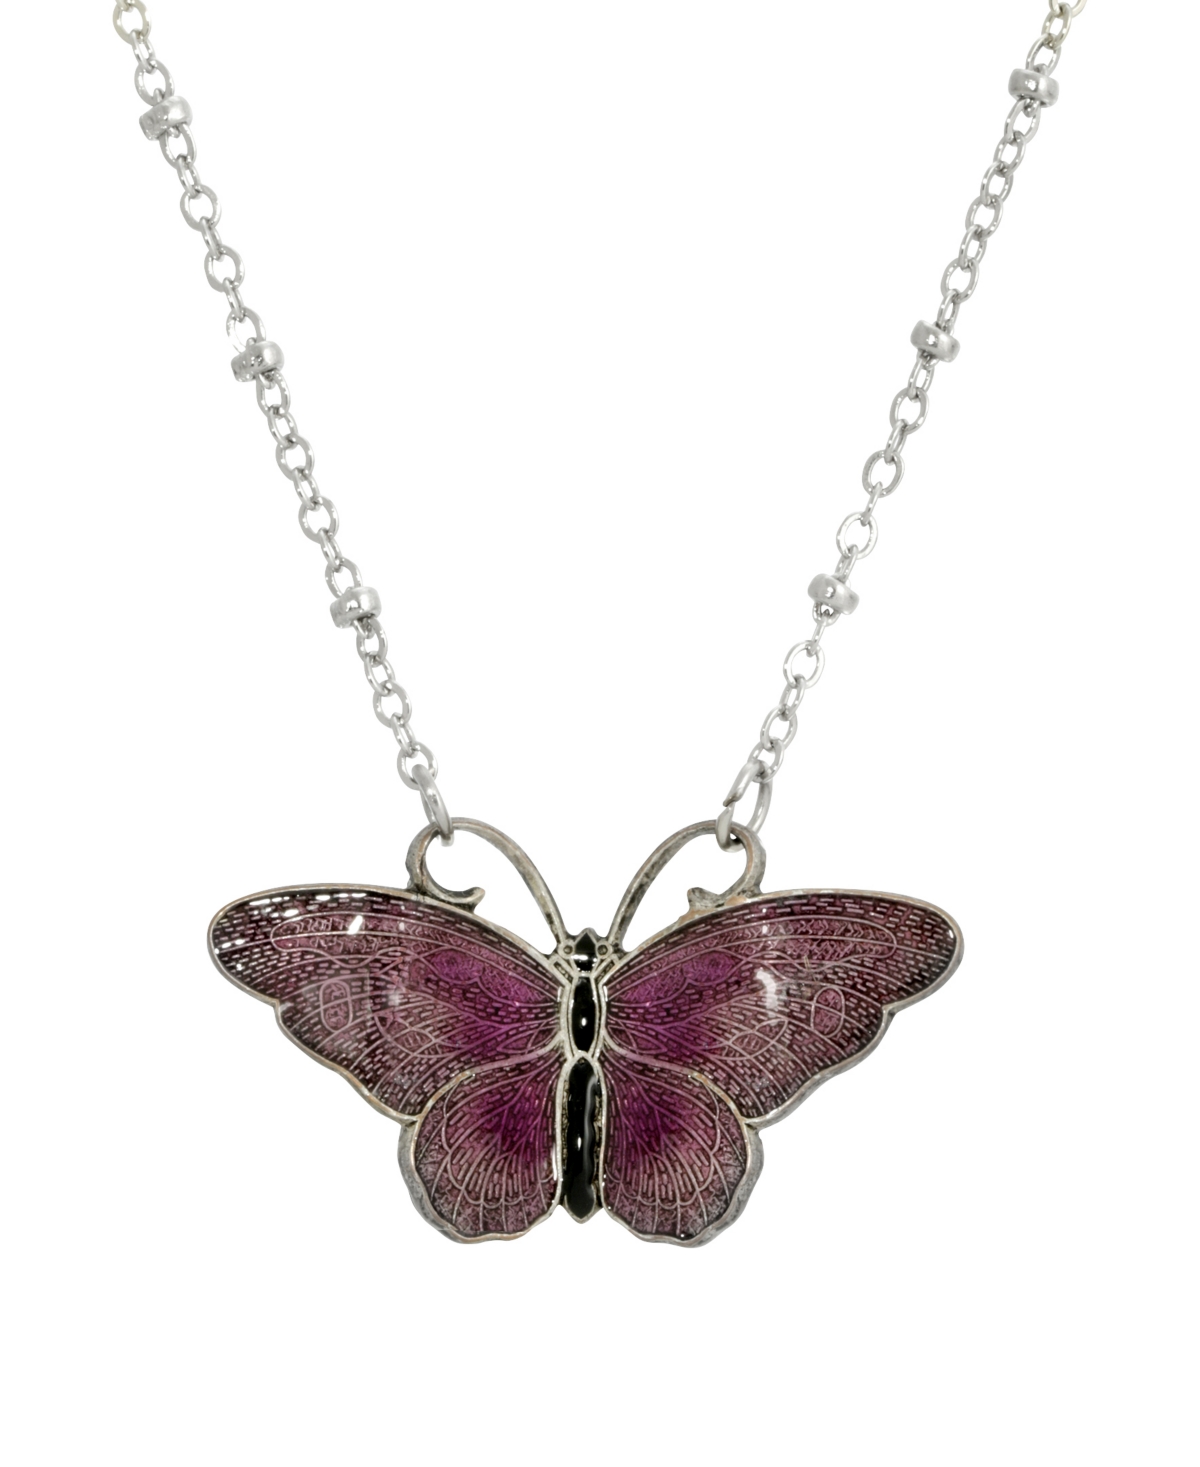 2028 Women's Silver Tone Purple And Black Enamel Butterfly Necklace